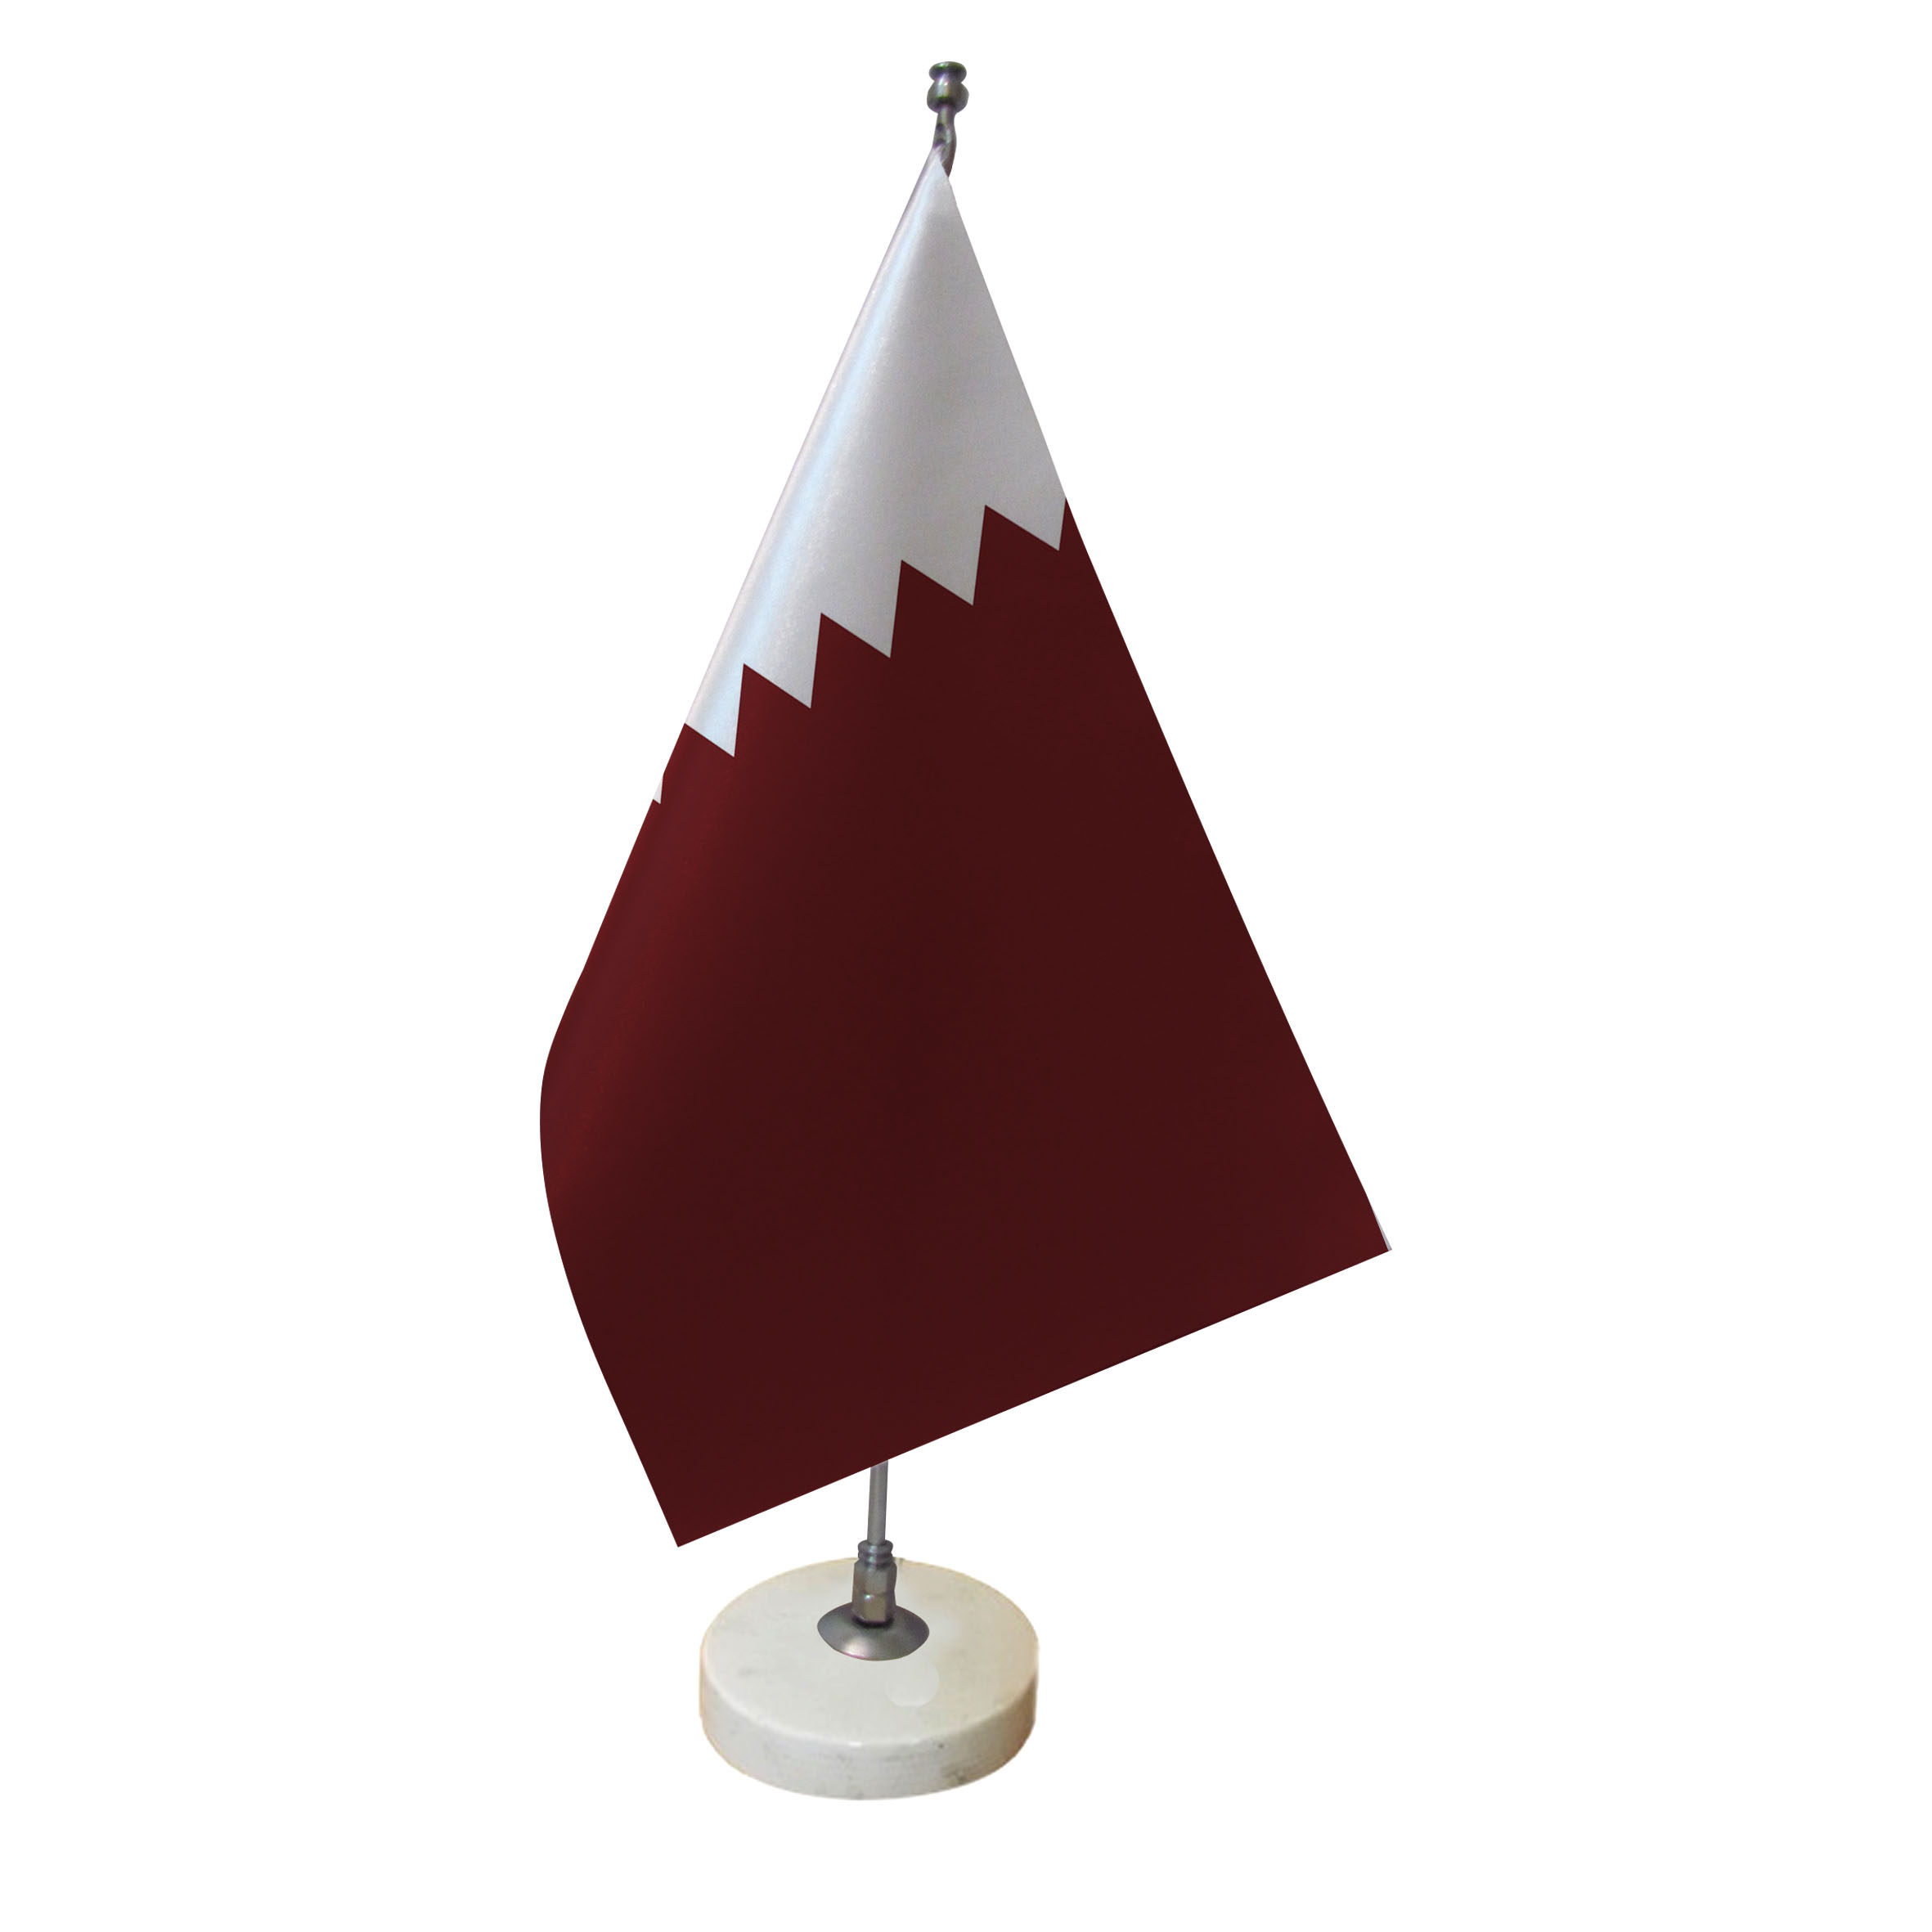 پرچم رومیزی طرح پرچم قطر کد pr18